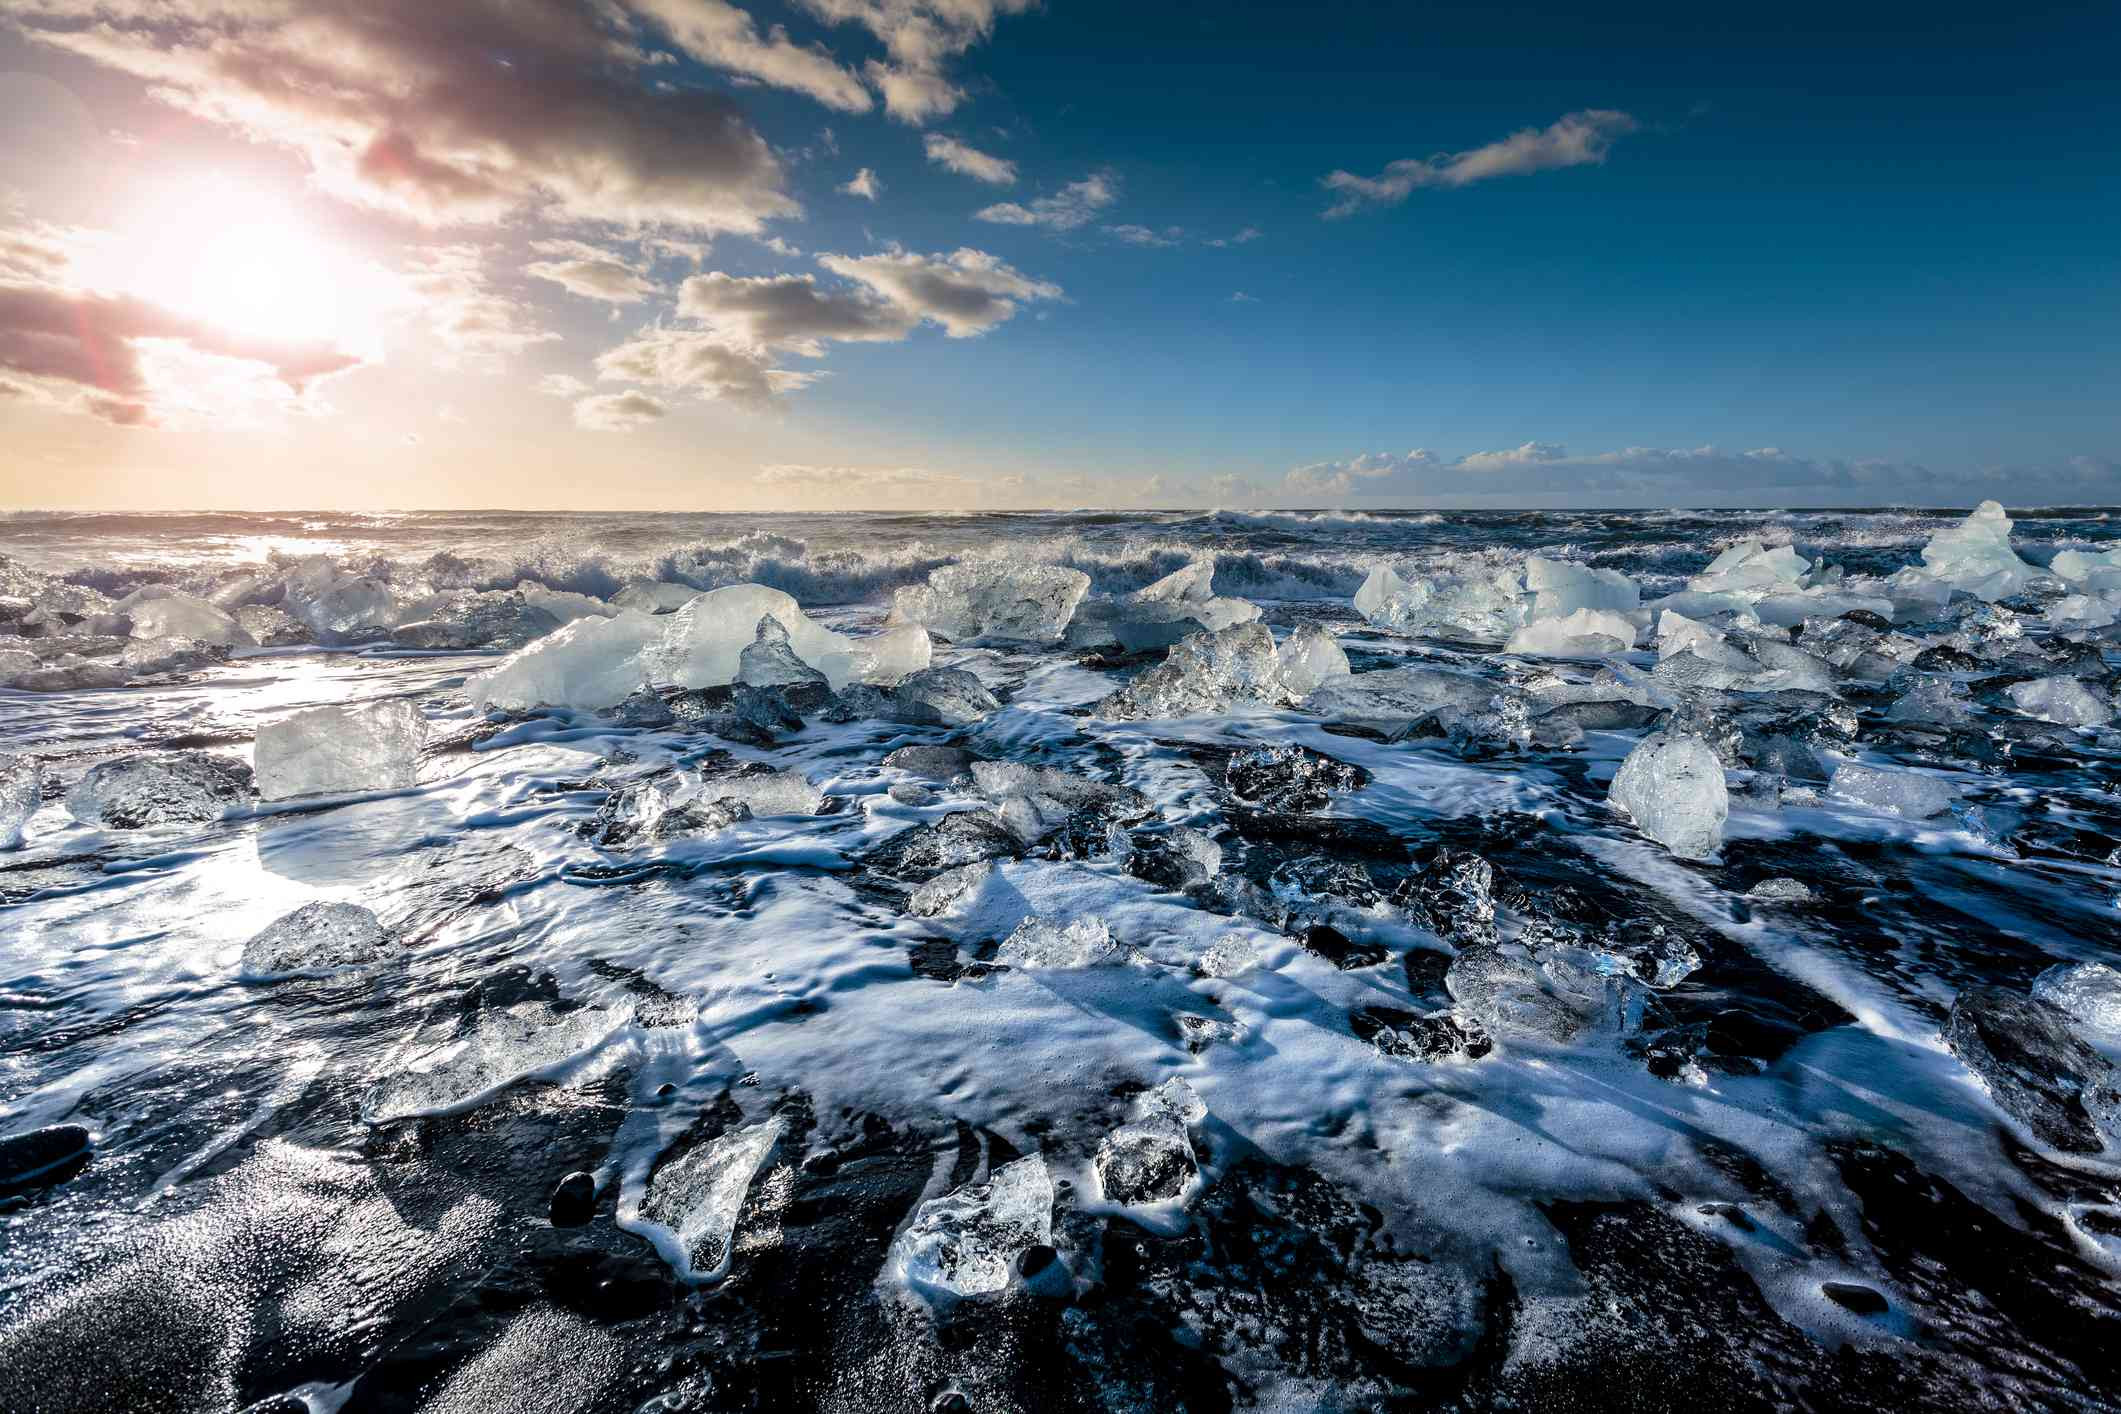 Khám phá bãi biển 'kim cương' như hiện ra từ phim viễn tưởng ở Iceland